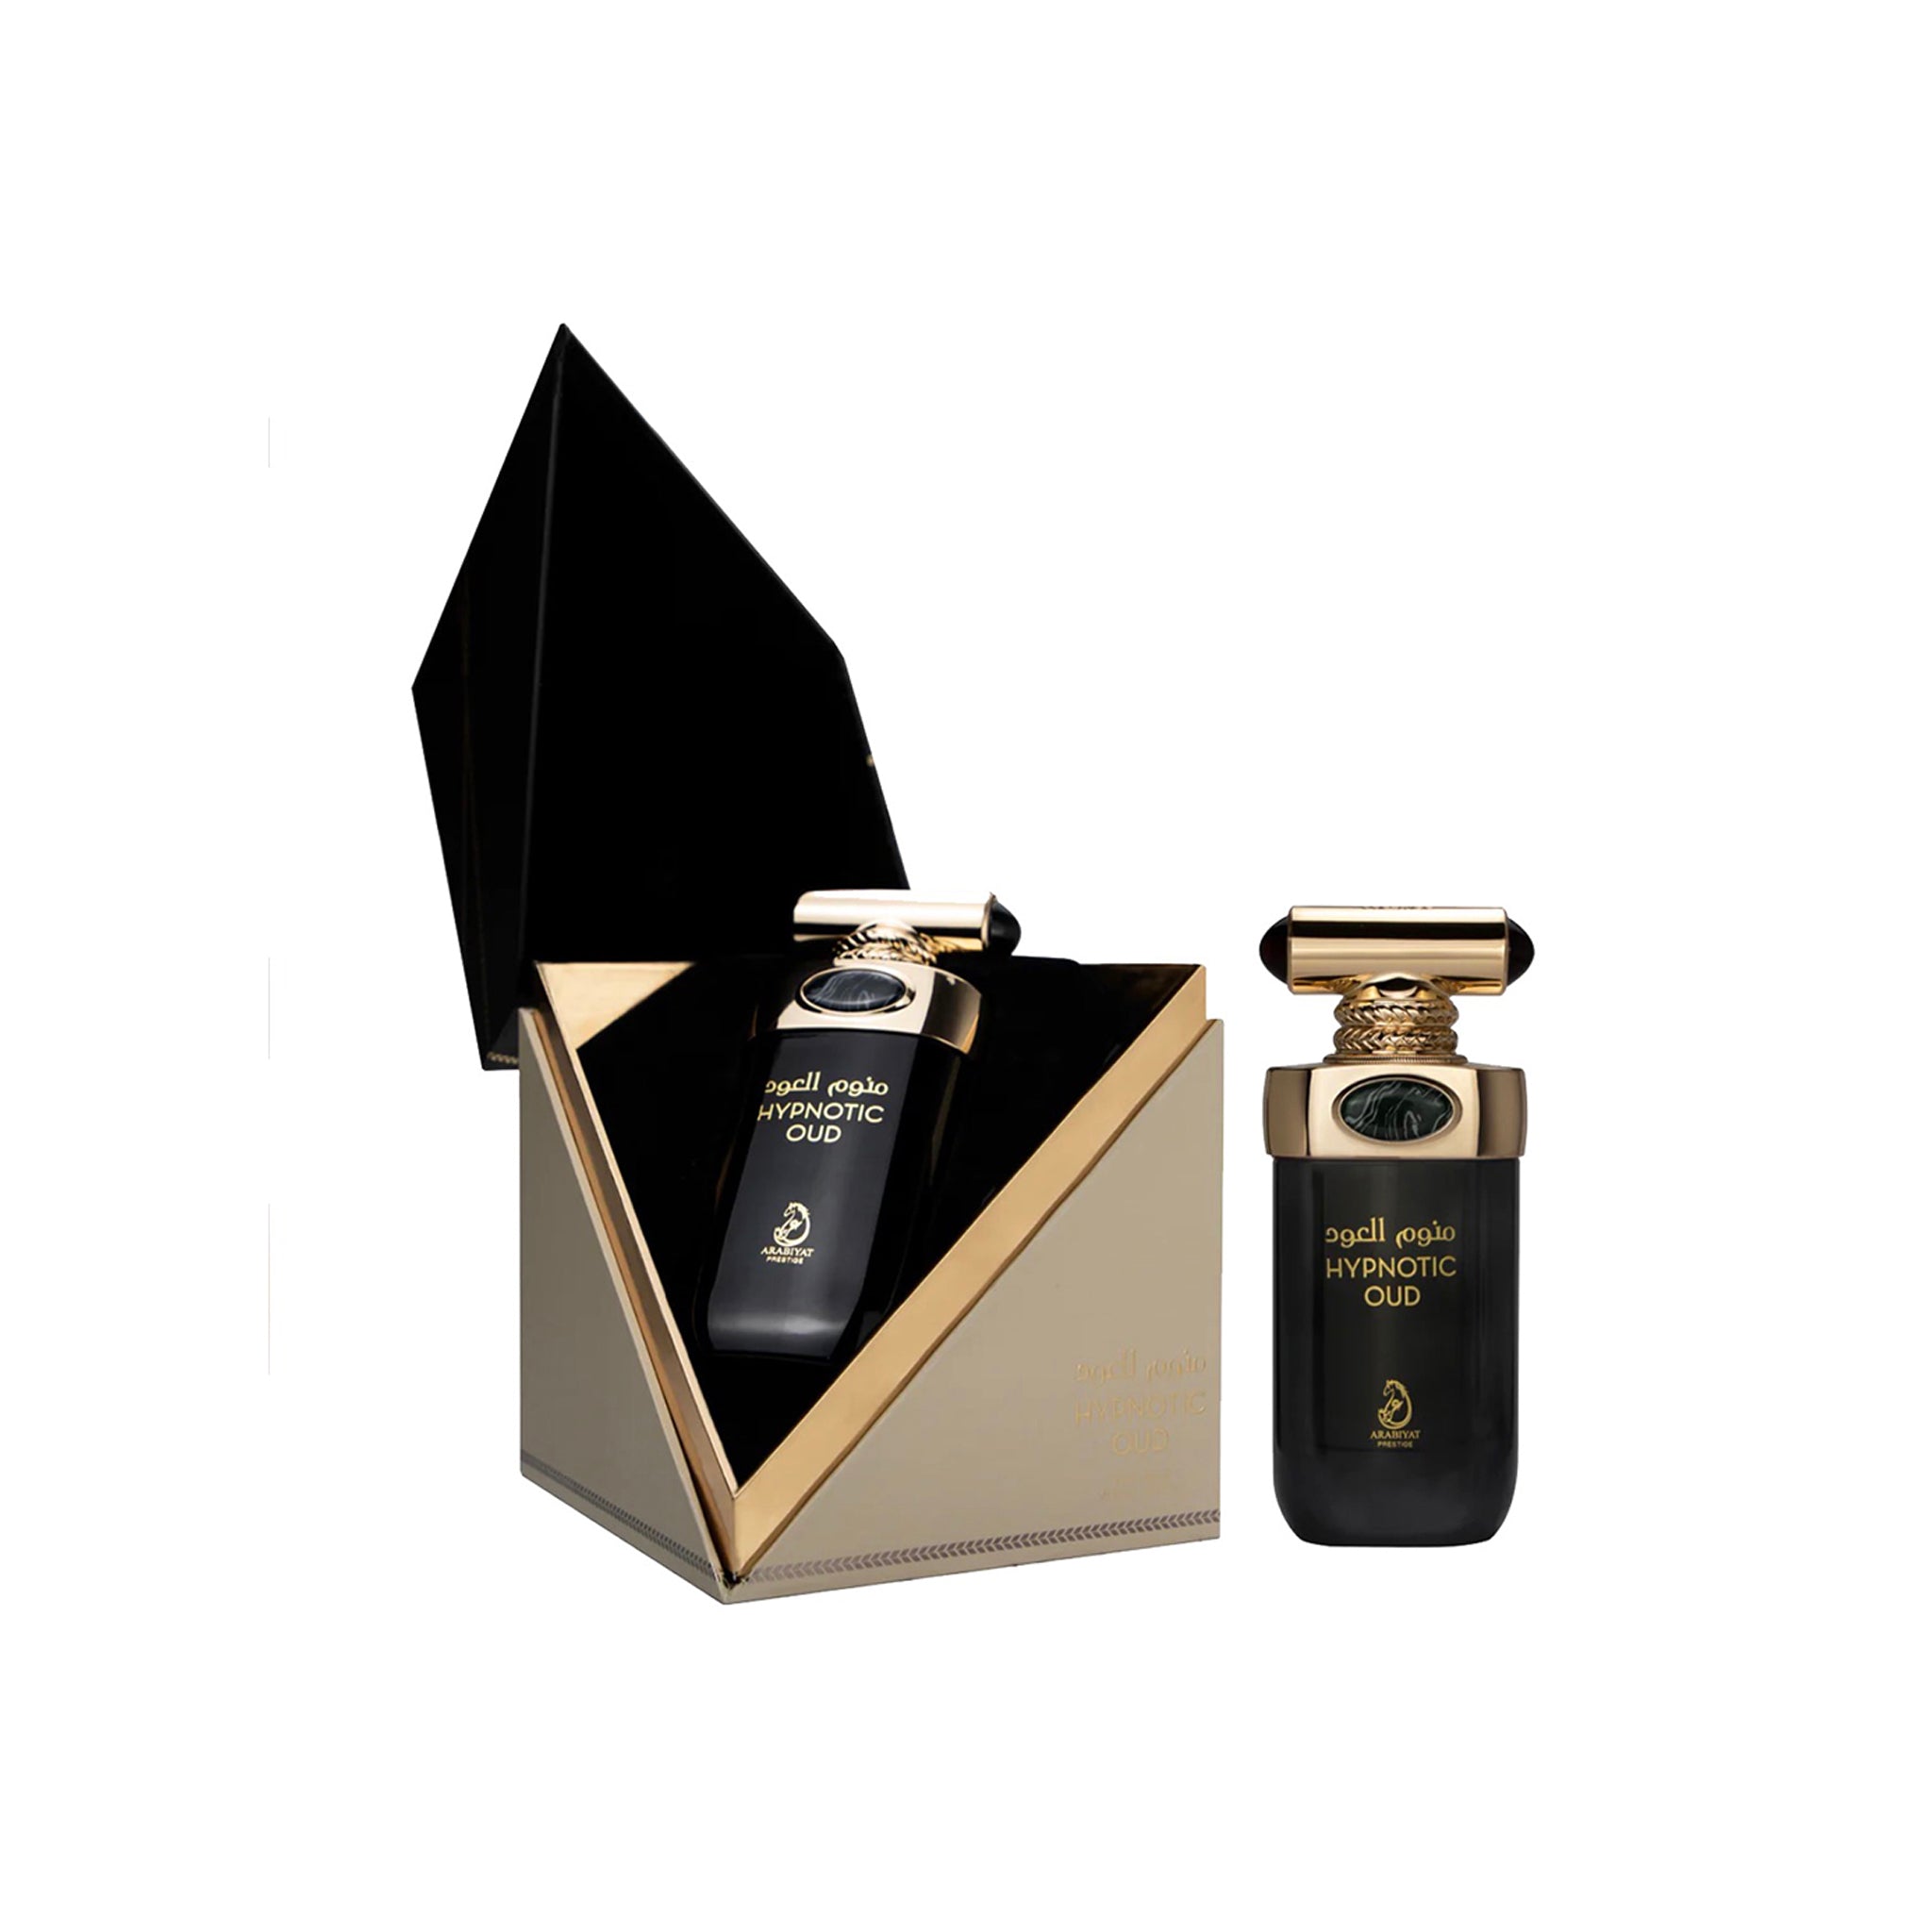 Hypnotic Oud Eau De Parfum 100ml by Arabiyat Prestige